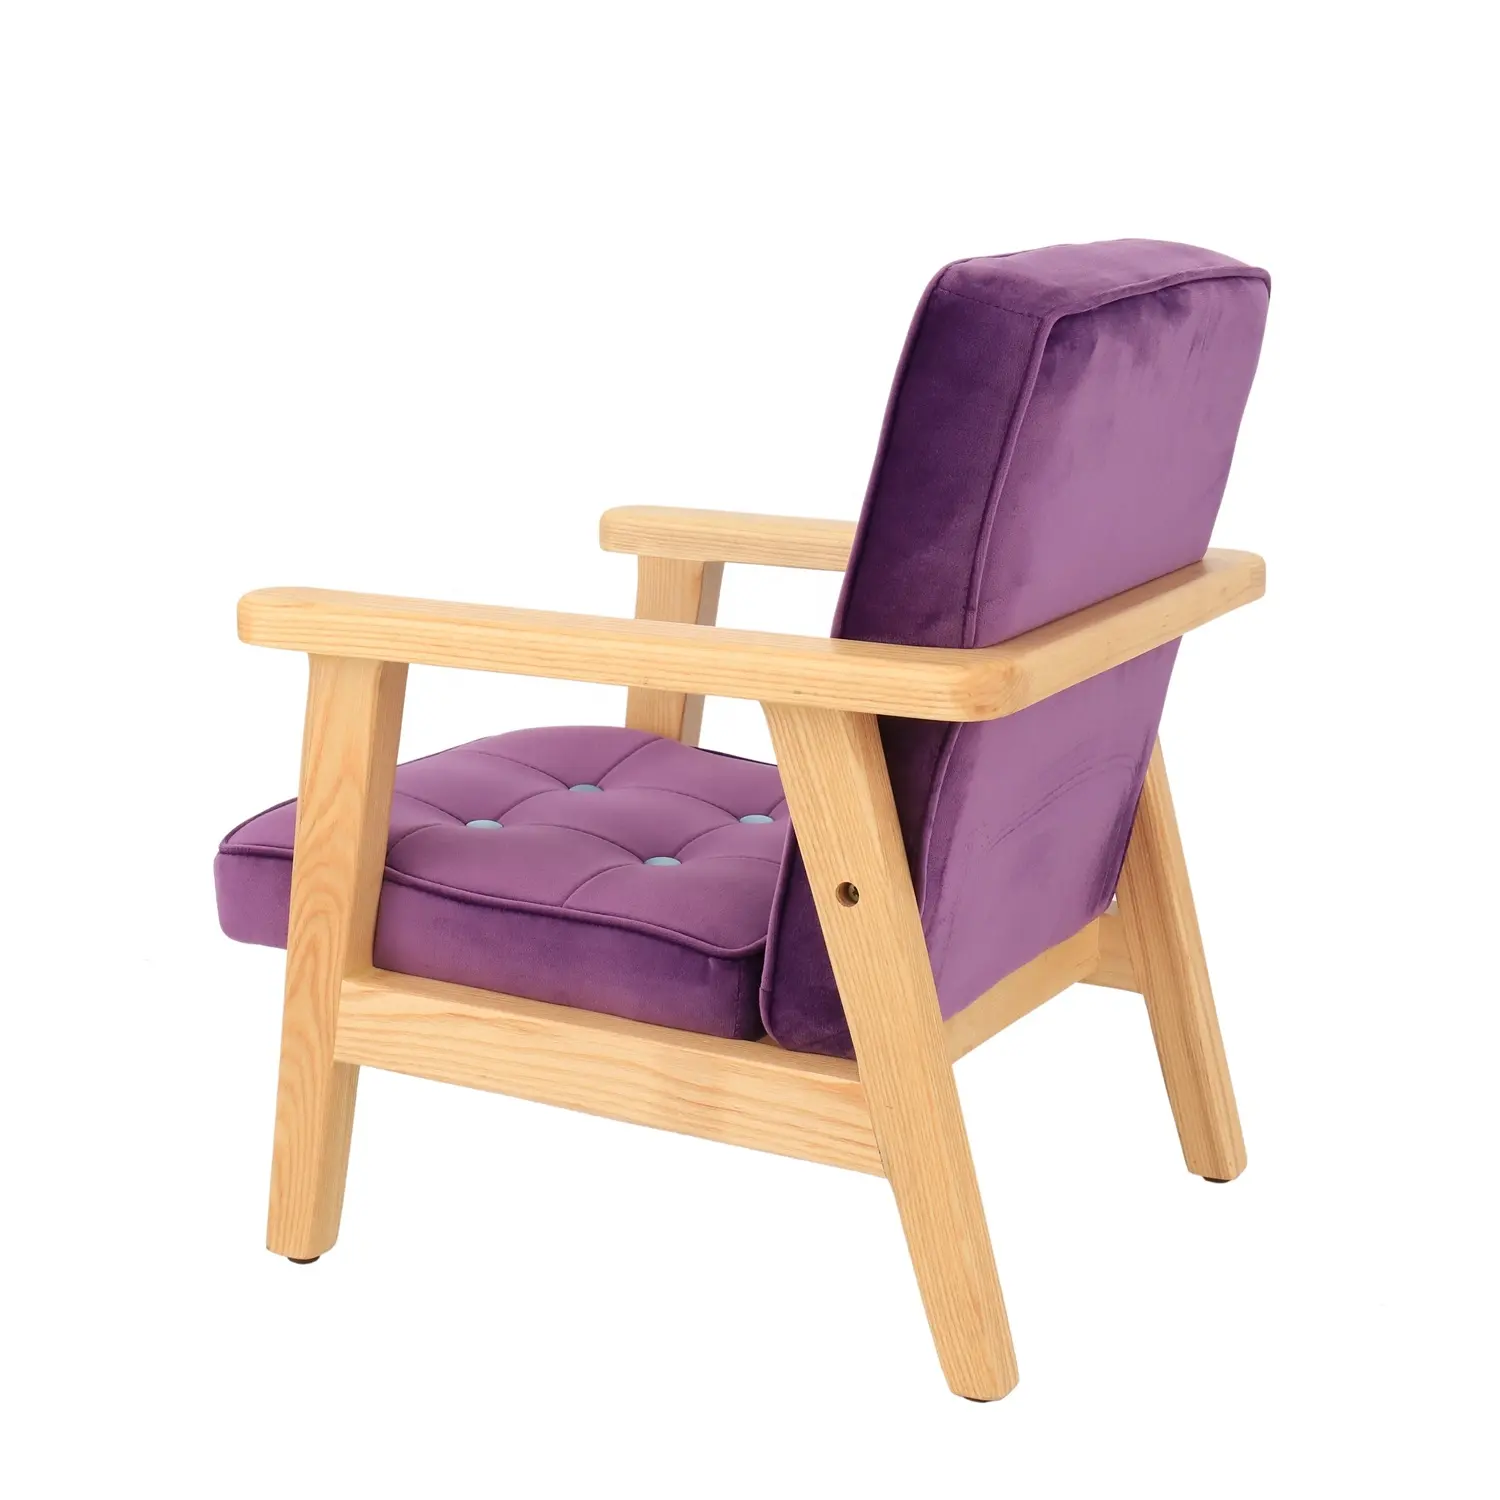 Sillas tapizadas de terciopelo tela patas de madera modernas muebles de sala de estar acento sofá individual con estilo